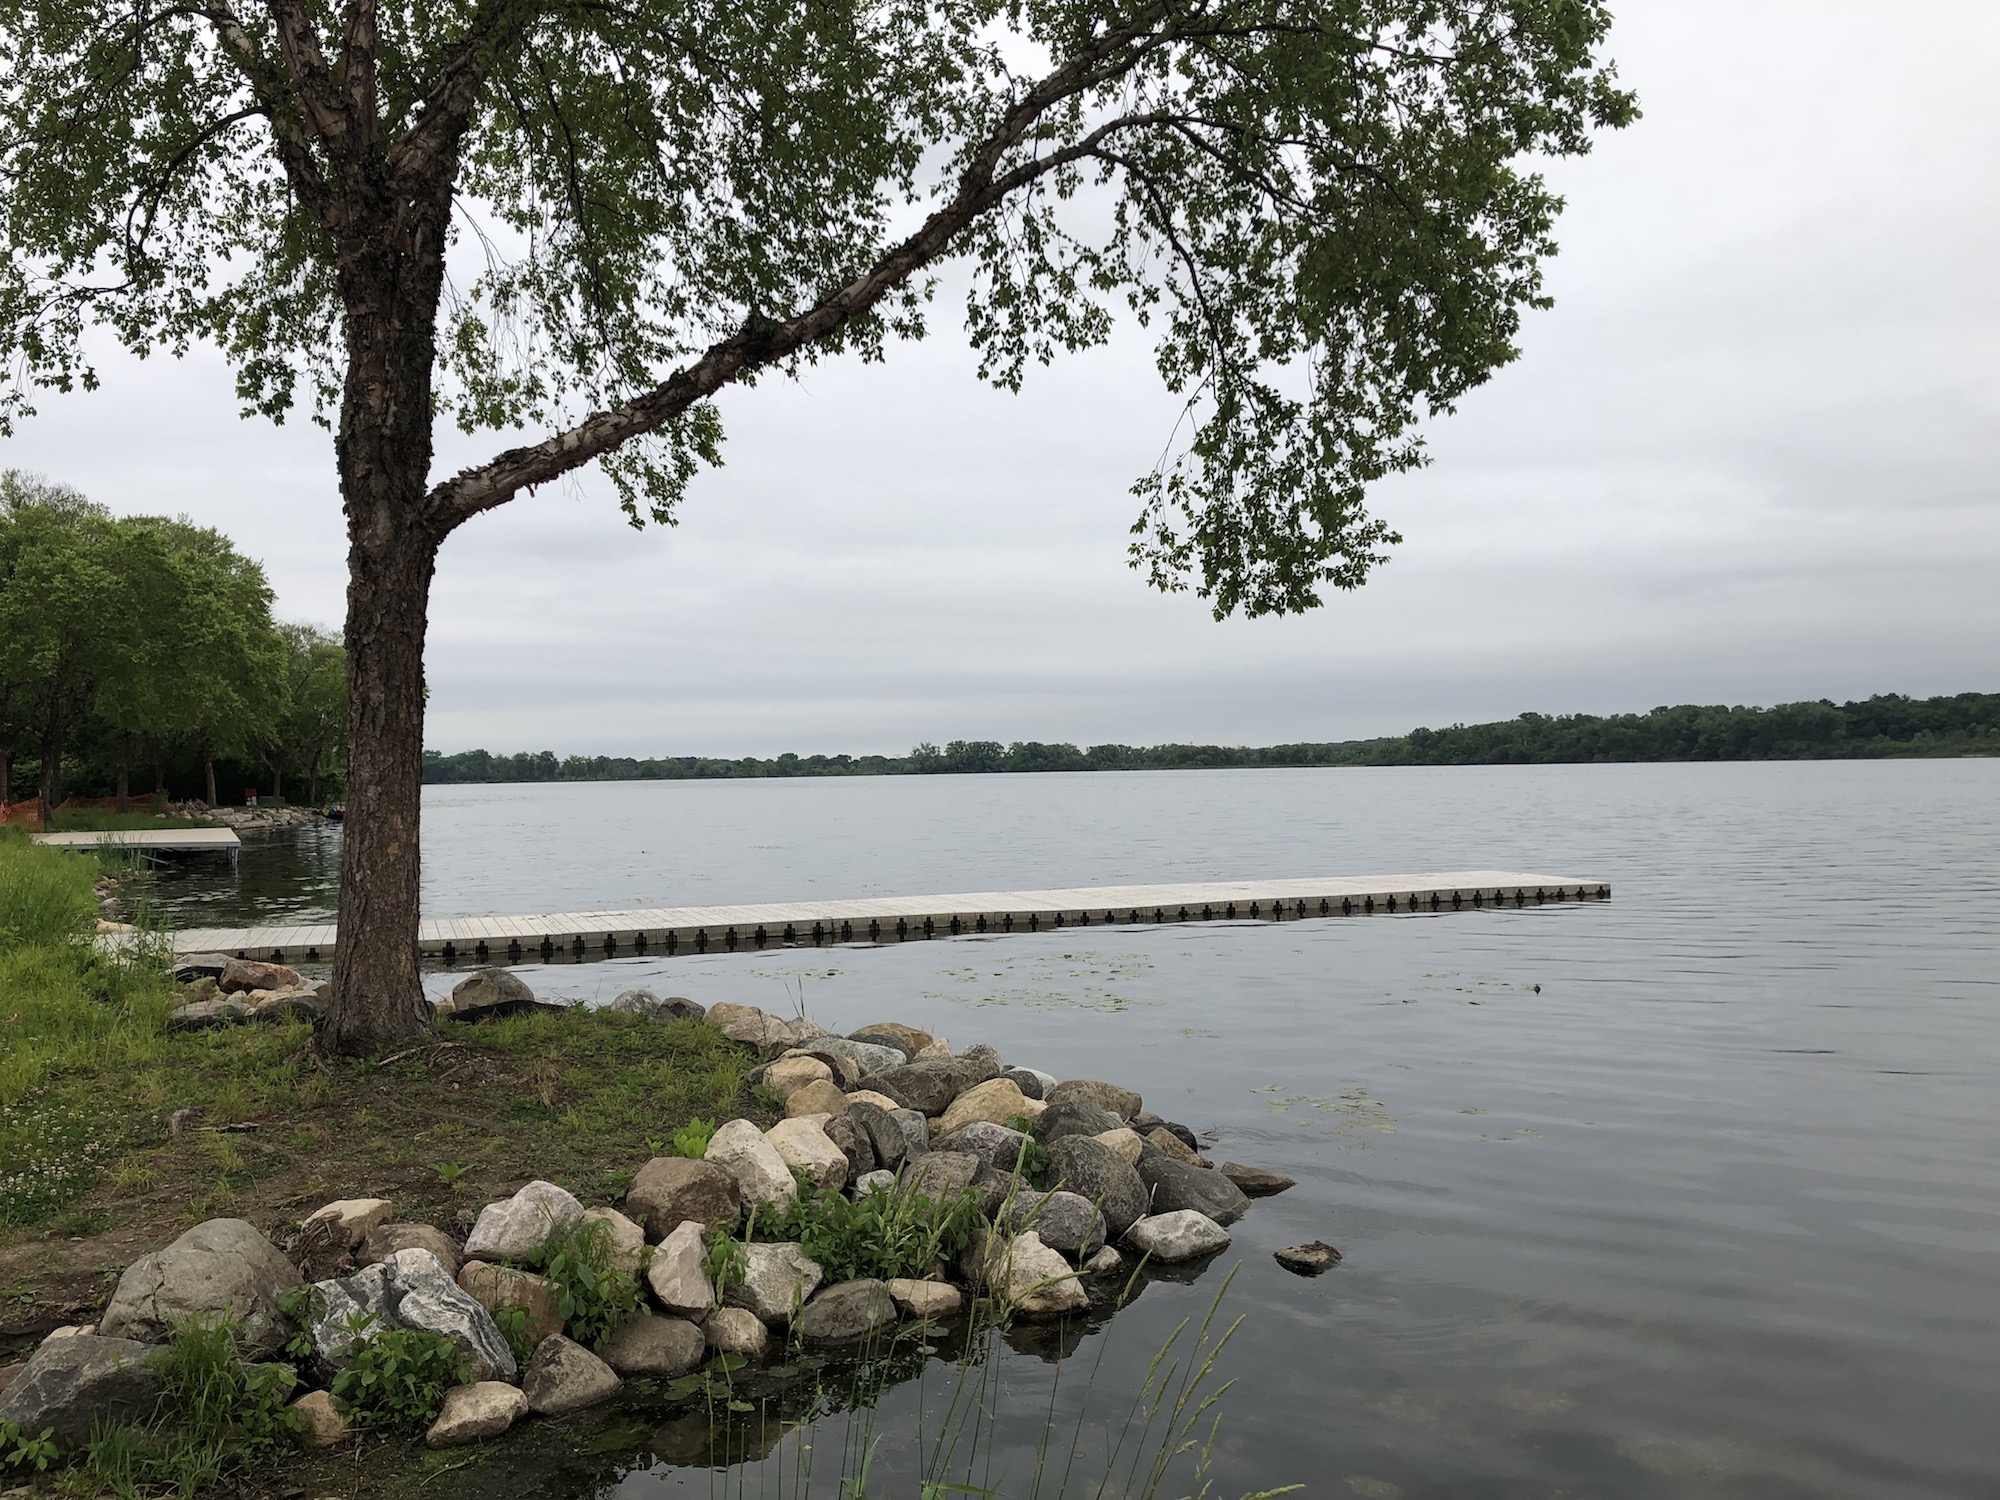 Lake Wingra on June 17, 2019.